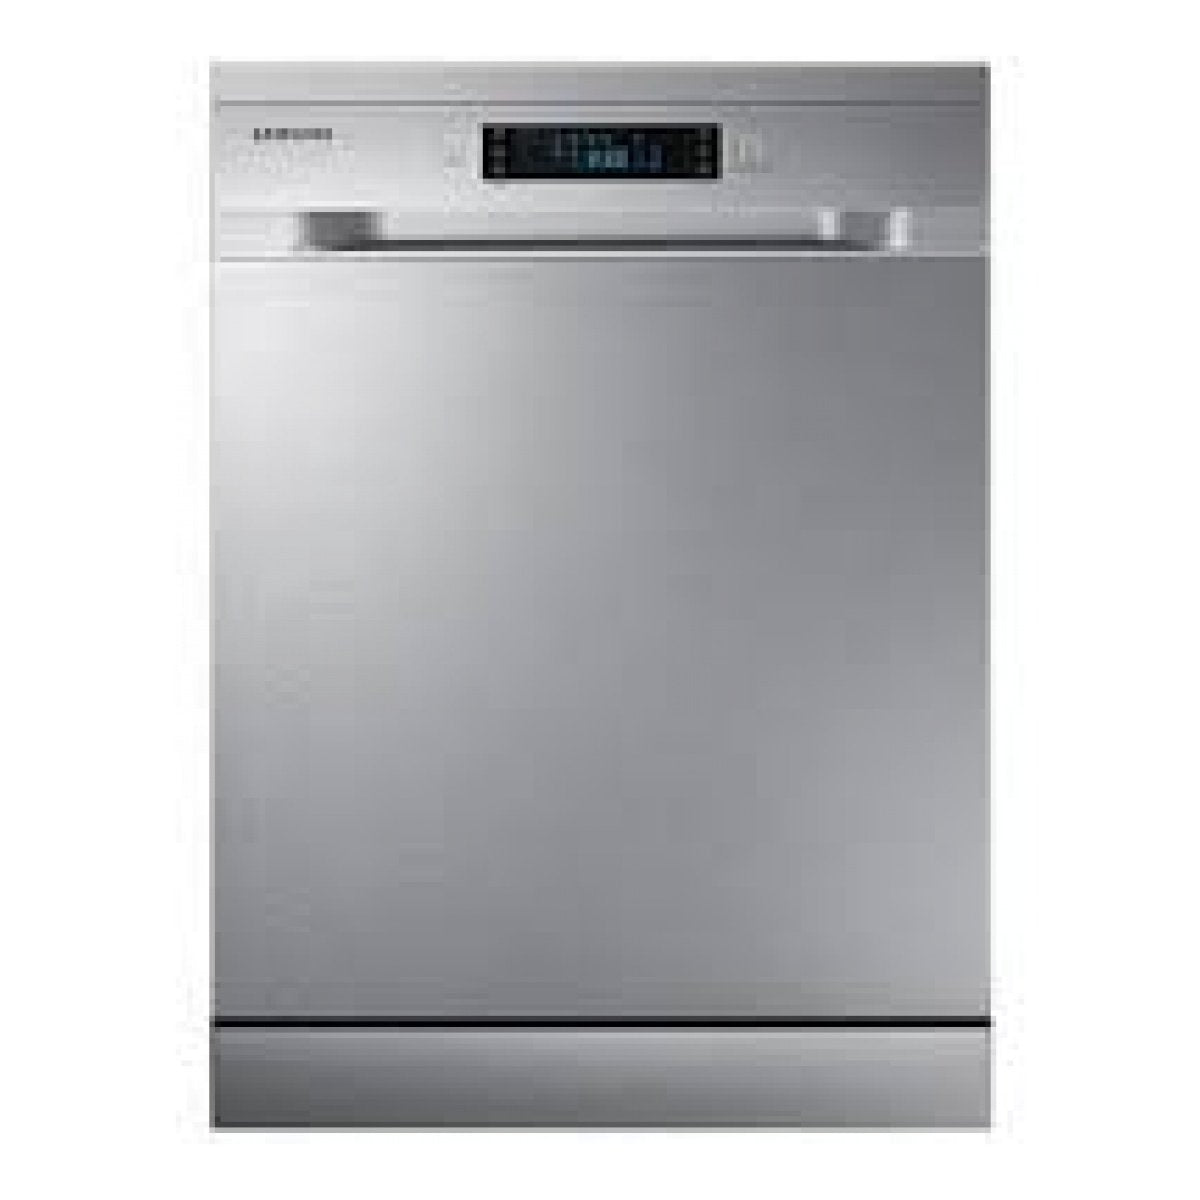 Samsung Dishwasher 5 Program DW60M5050FS/FH / DW60M5050FW/FH